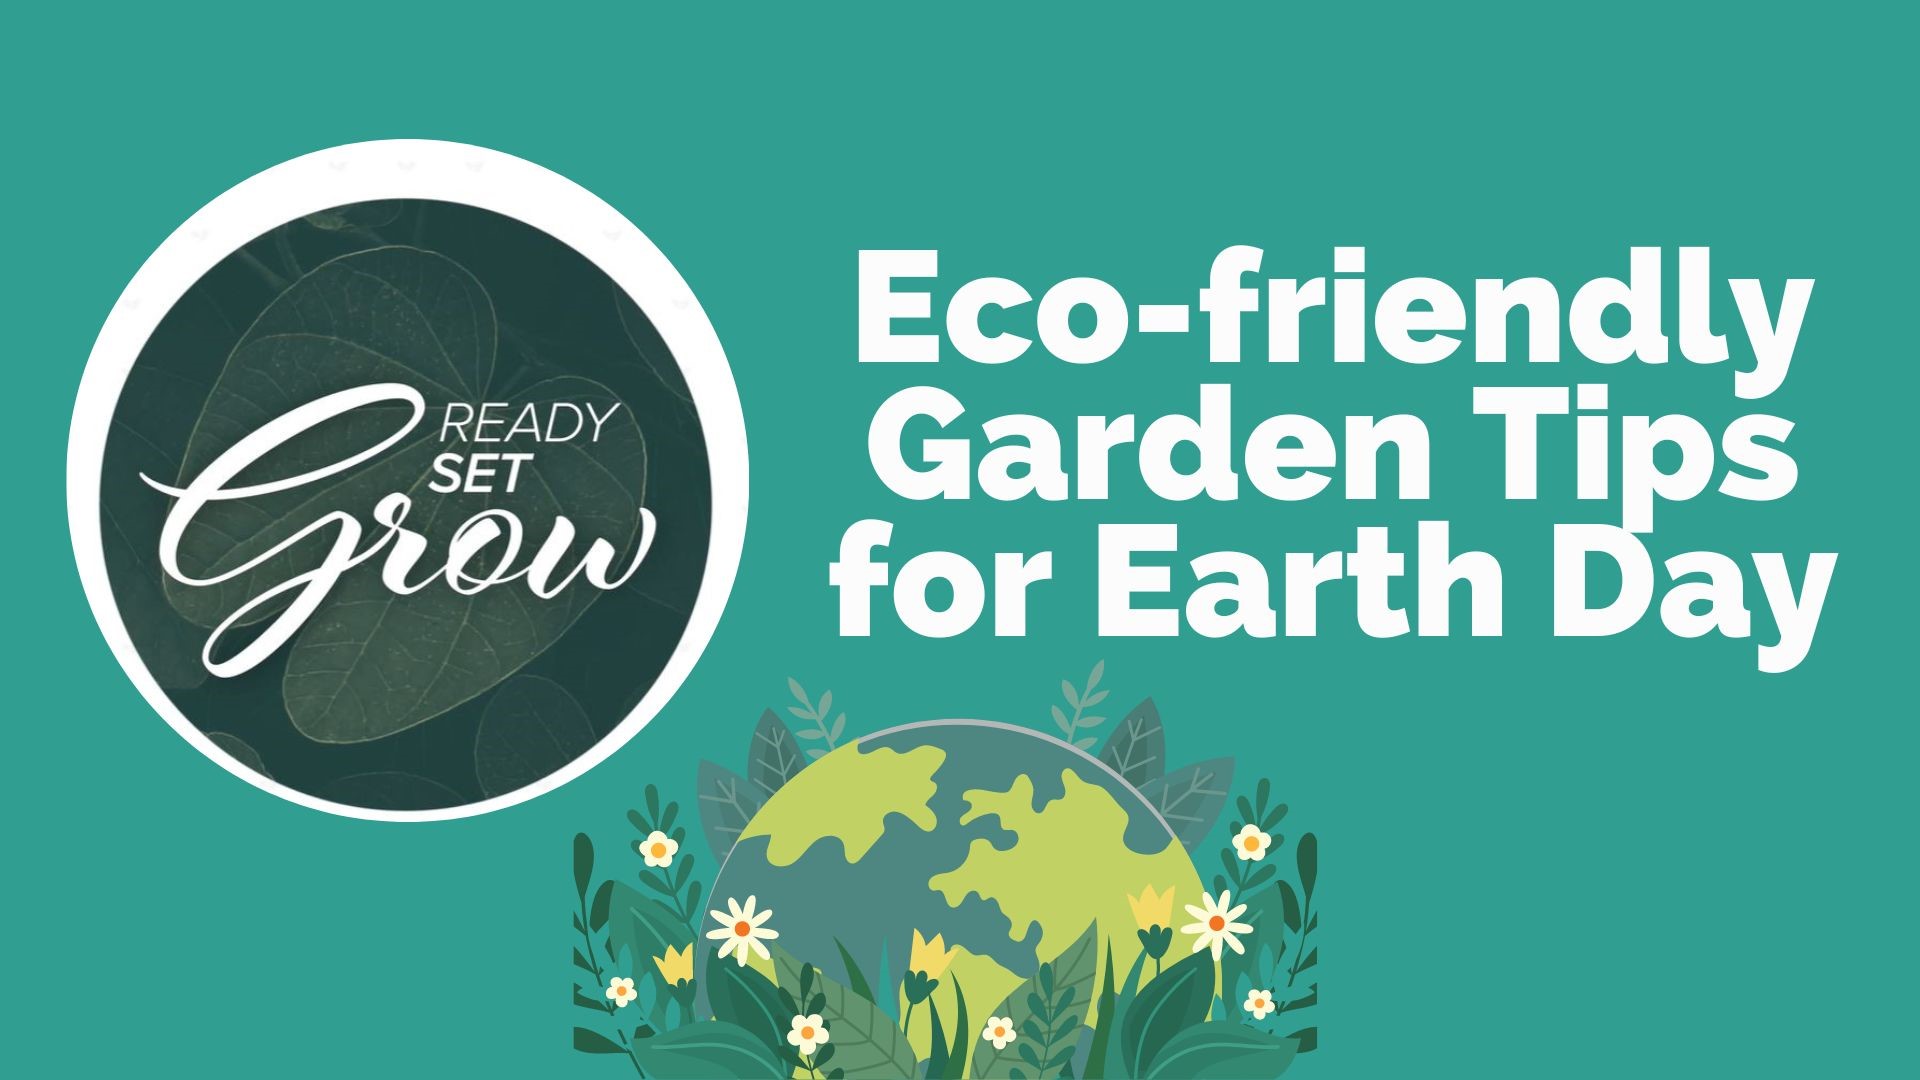 Ready, Set, Grow Ecofriendly garden tips for Earth Day